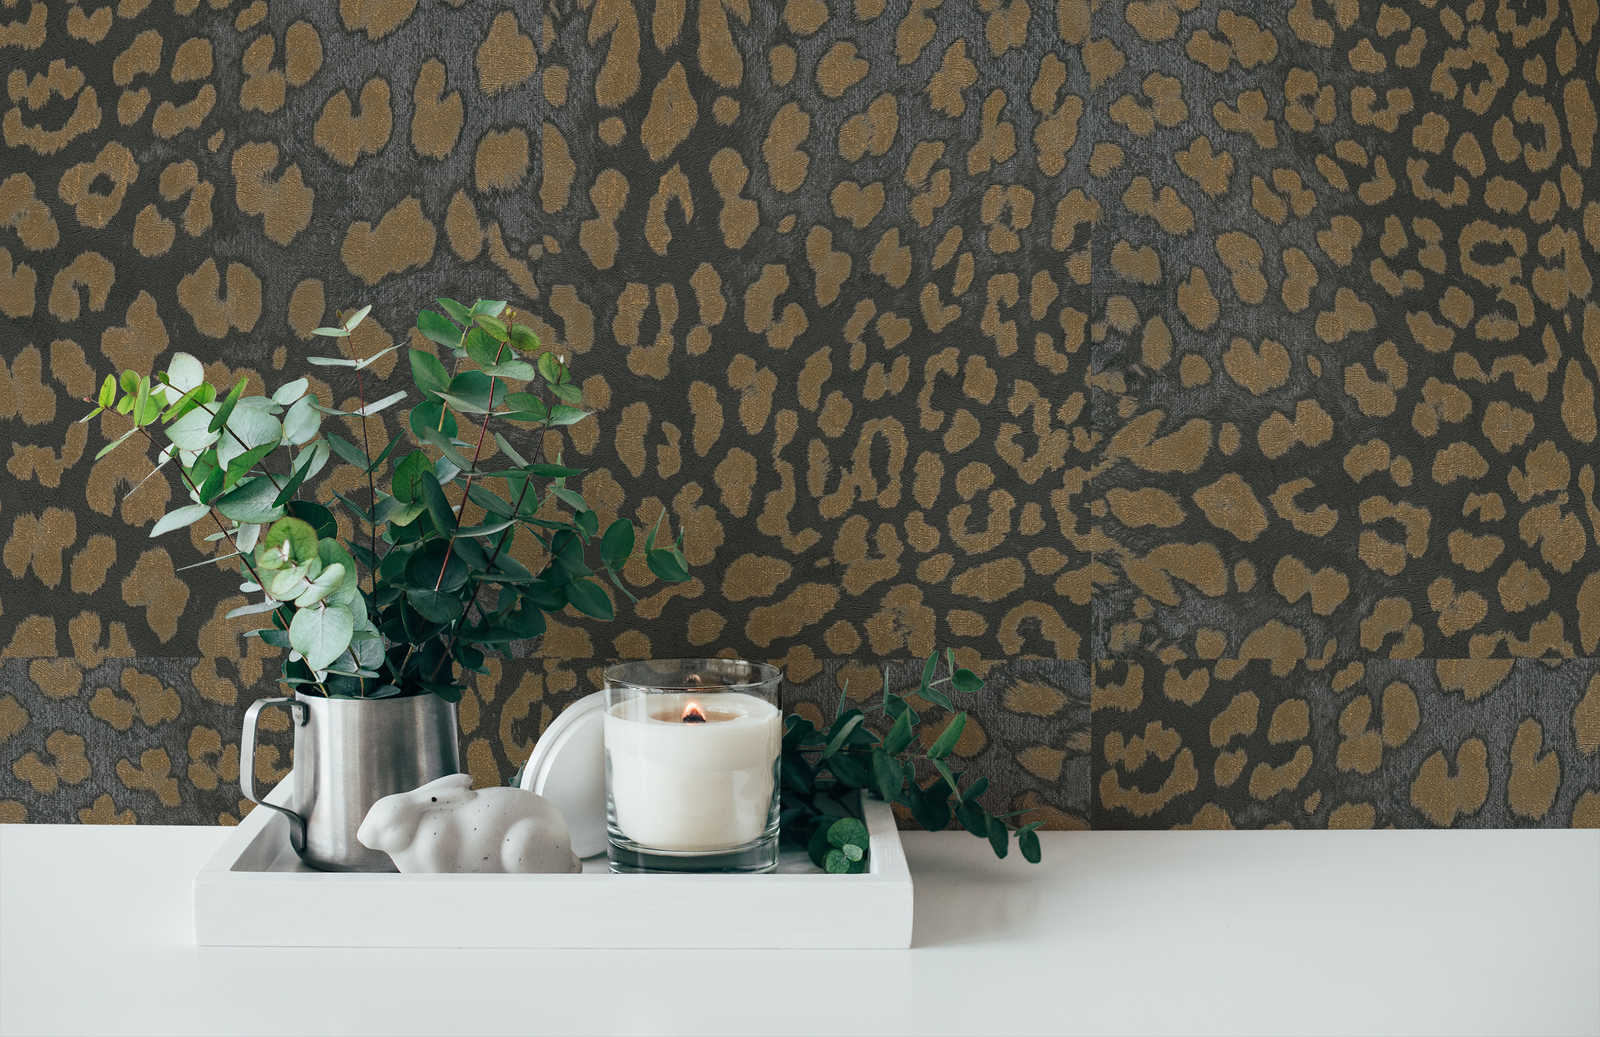             Animal print wallpaper with metallic pattern - grey, gold
        